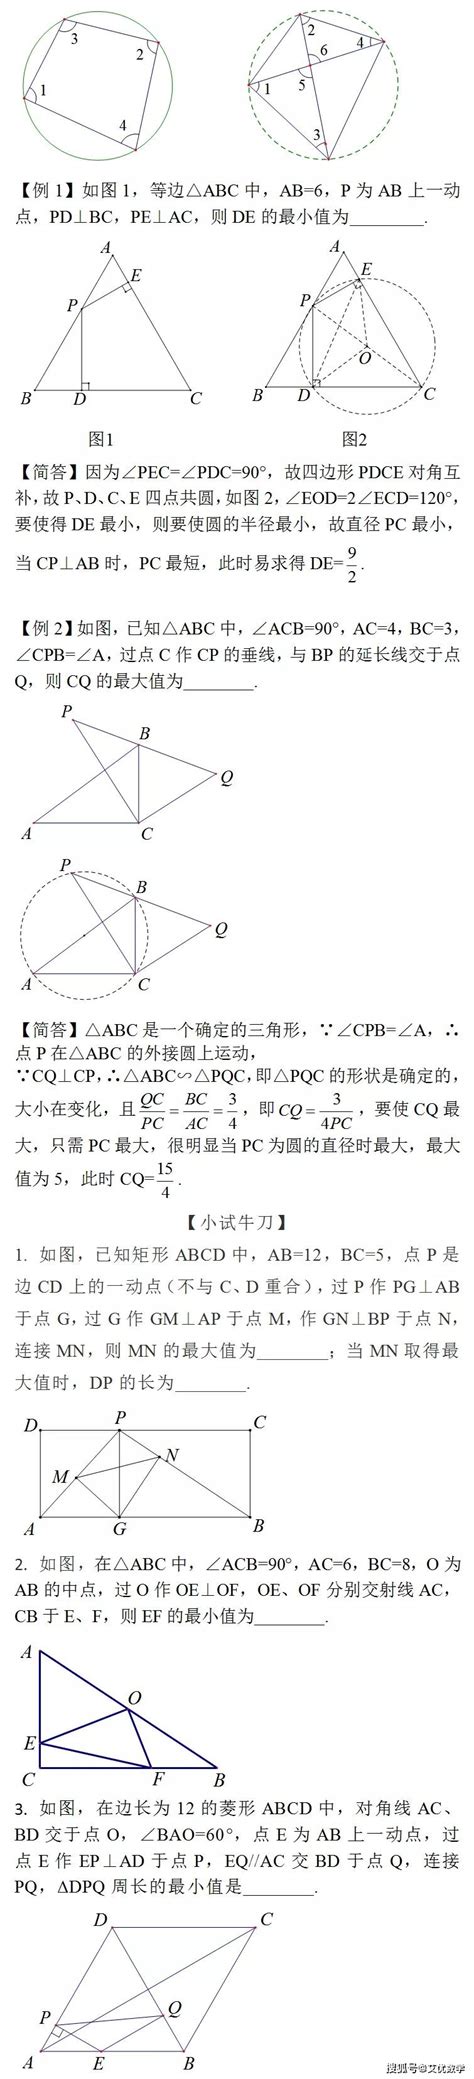 中考数学经典几何模型之隐圆模型_杭州学而思1对1